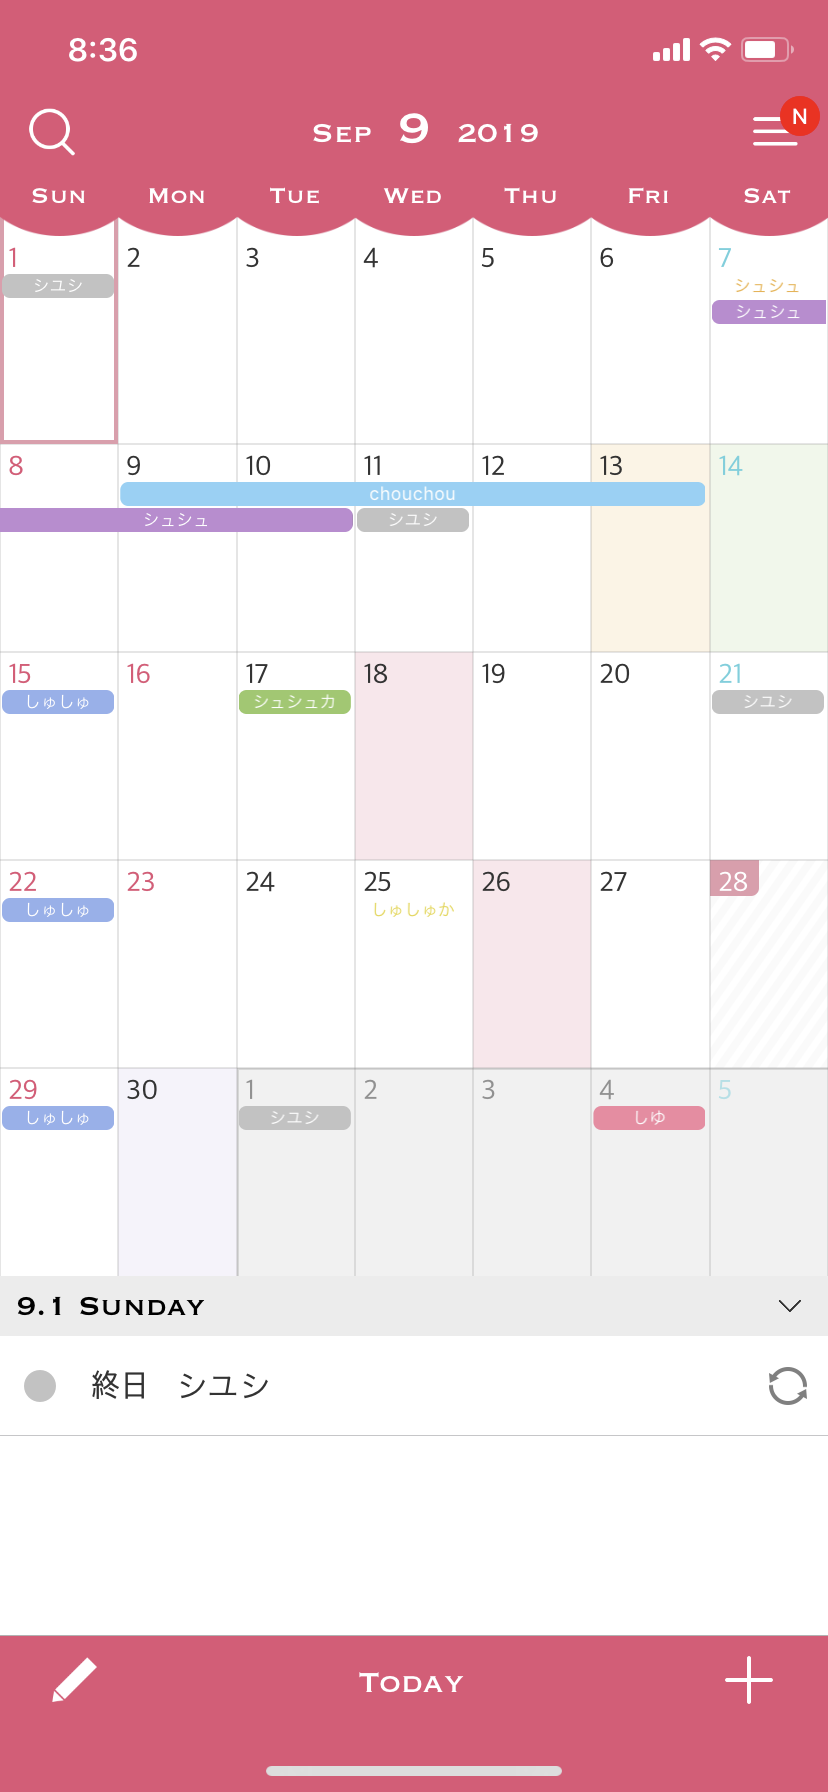 おしゃれ シンプルなiosカレンダーアプリ シュシュカレンダー のカスタマイズ例 Lcdog Note